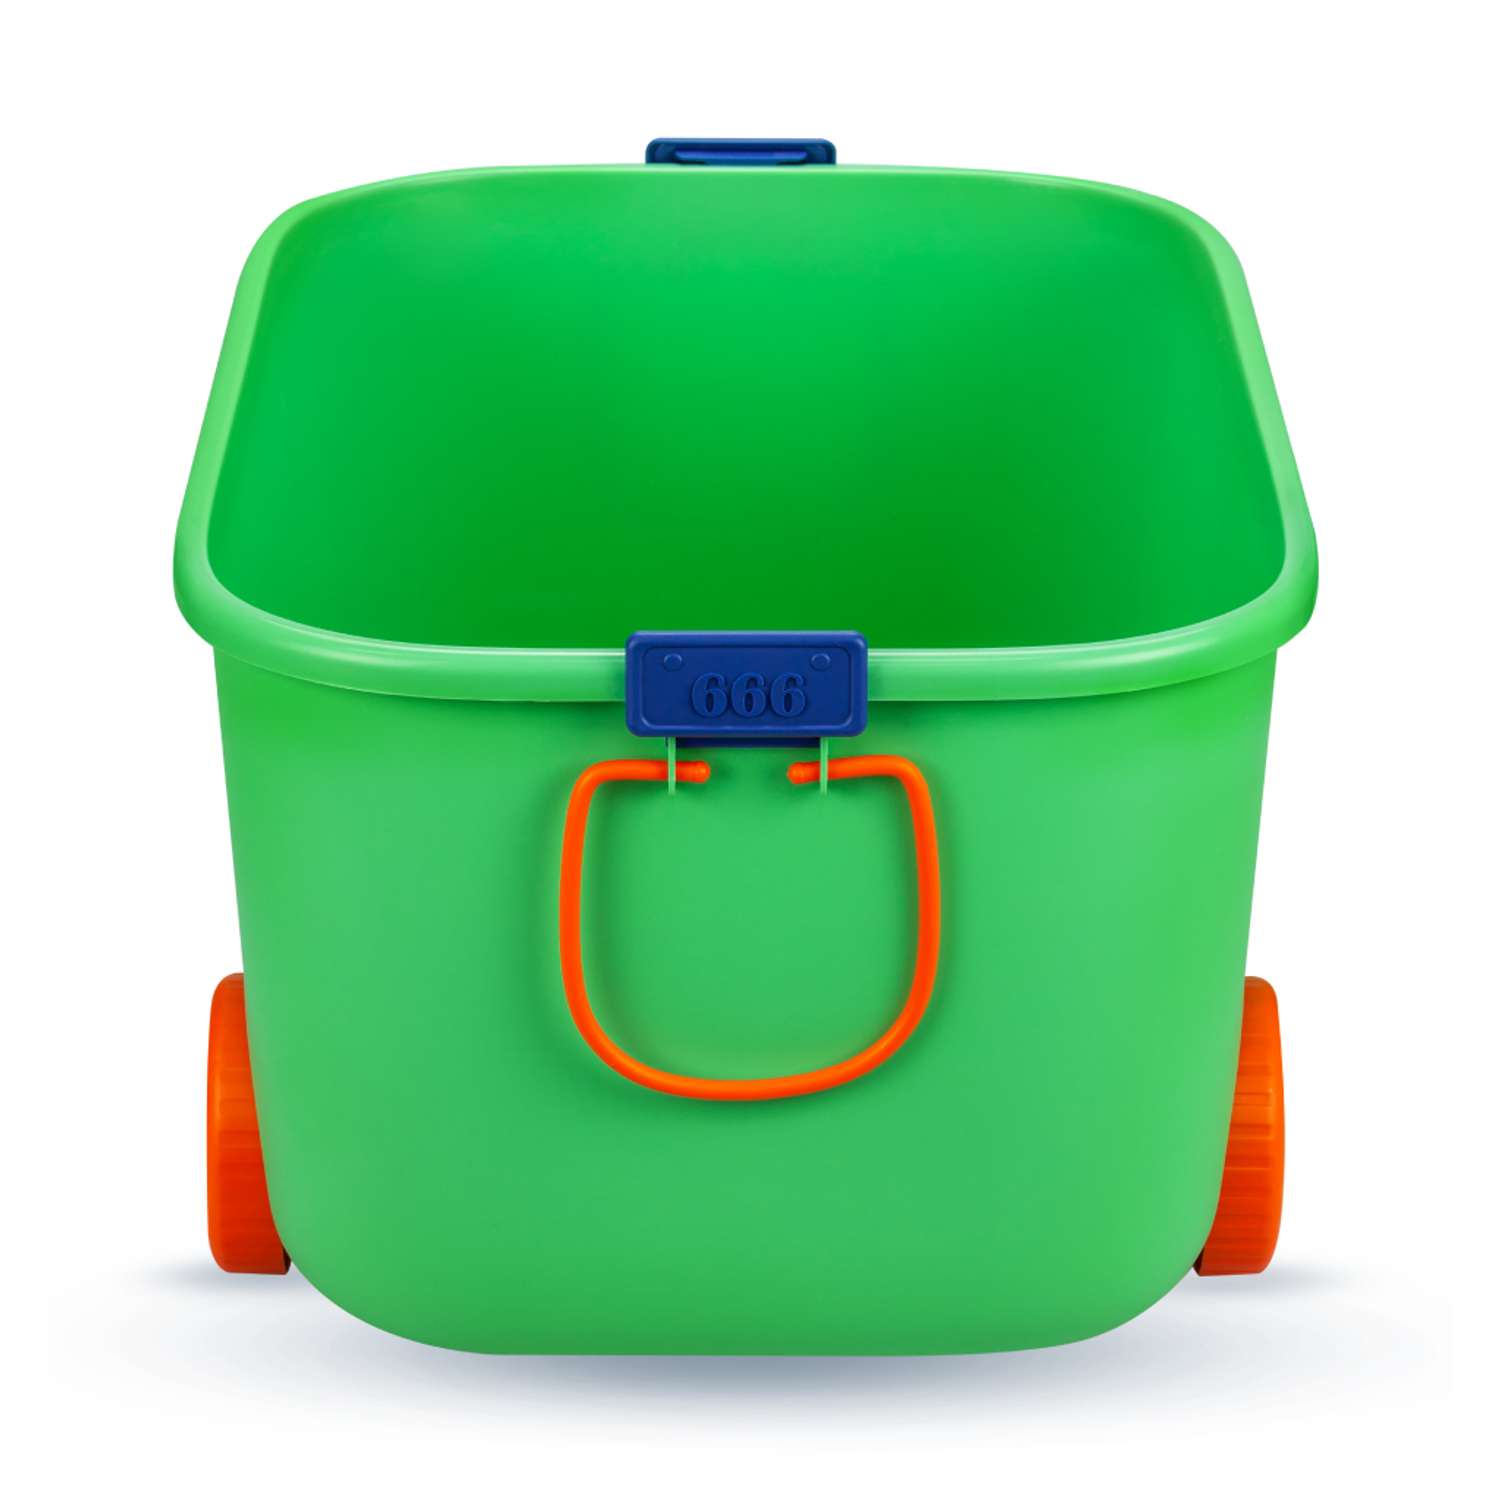 Ящик для хранения игрушек Solmax контейнер на колесиках 54х41.5х38 см зеленый - фото 7